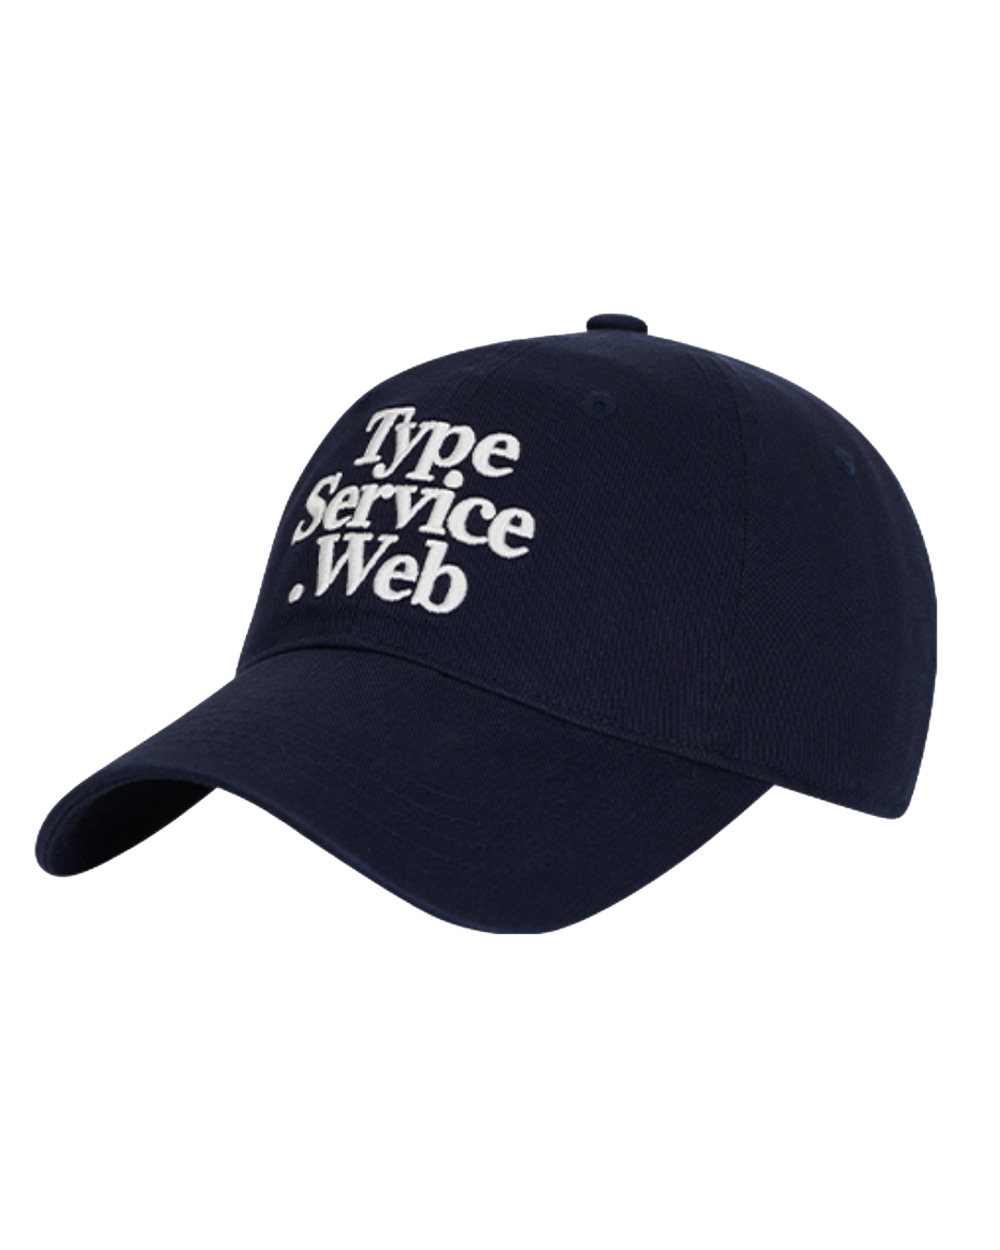 타입서비스 Typeservice Web Cap (Navy)